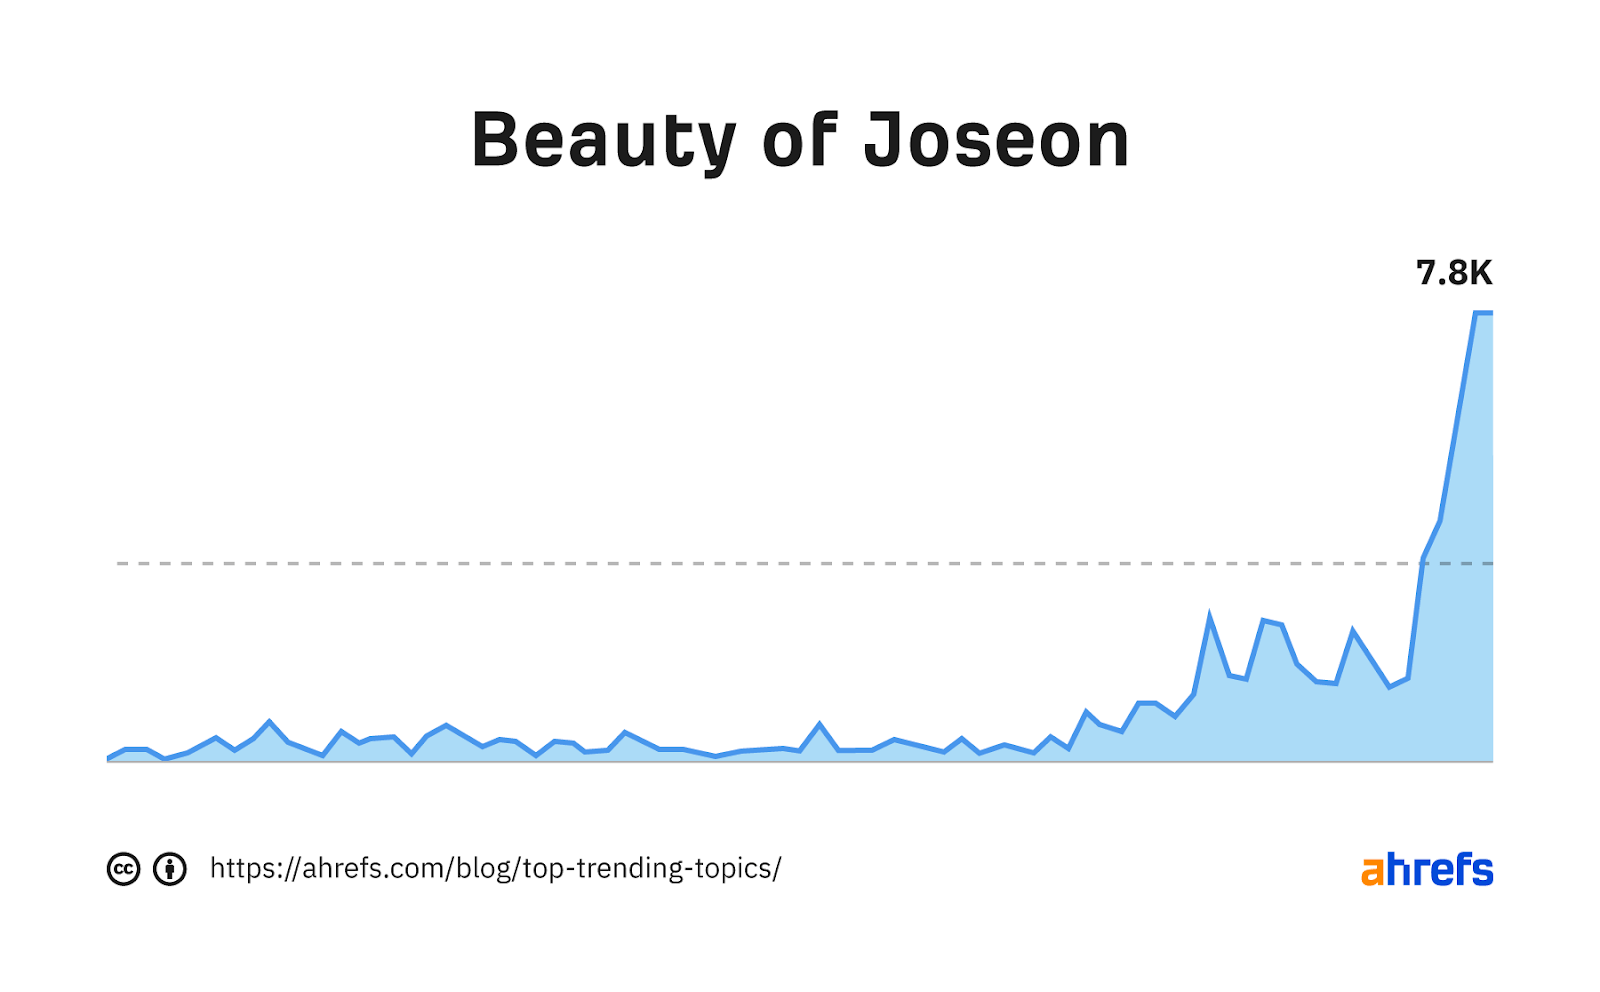 Gráfico de tendencia de la palabra clave "la belleza de joseon"